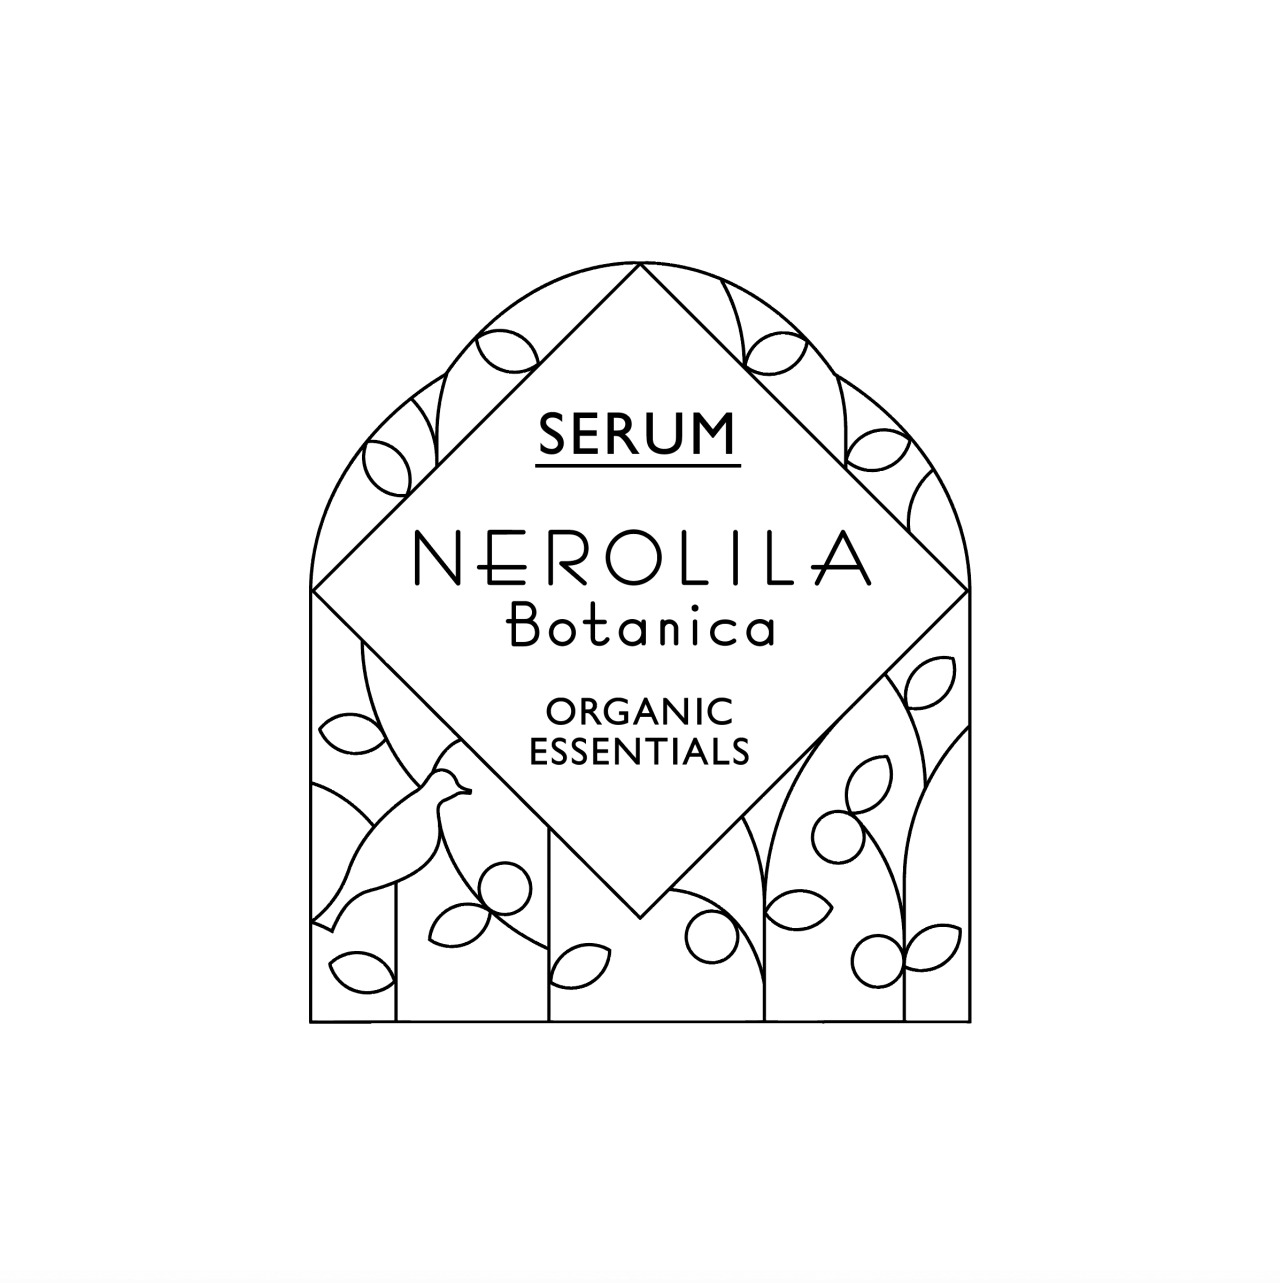 NEROLILA Botanica